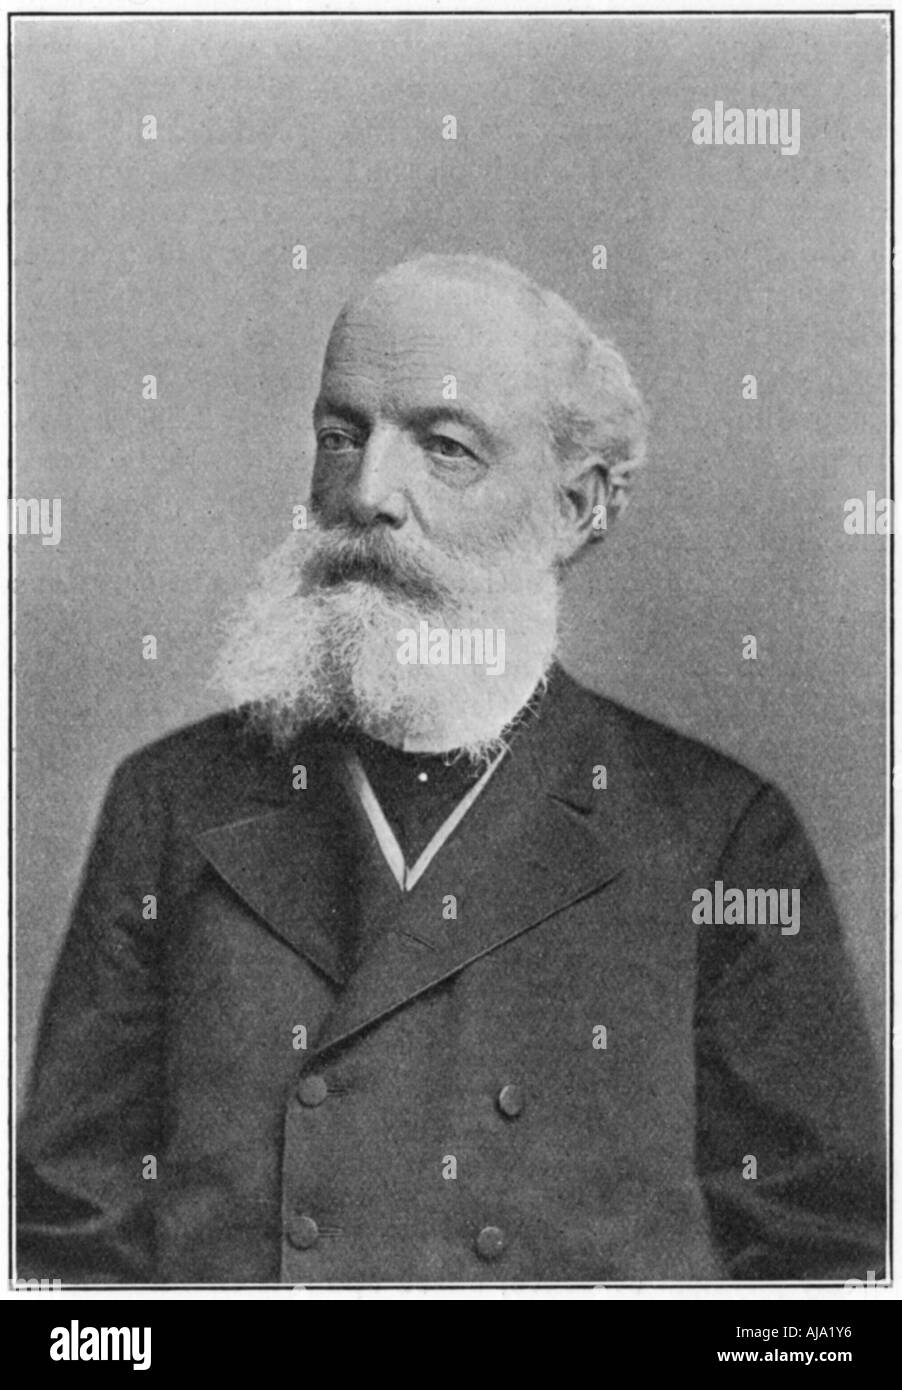 Friedrich August Kekule von Stradonitz, Alemán químico orgánico, c1885. Artista: Desconocido Foto de stock